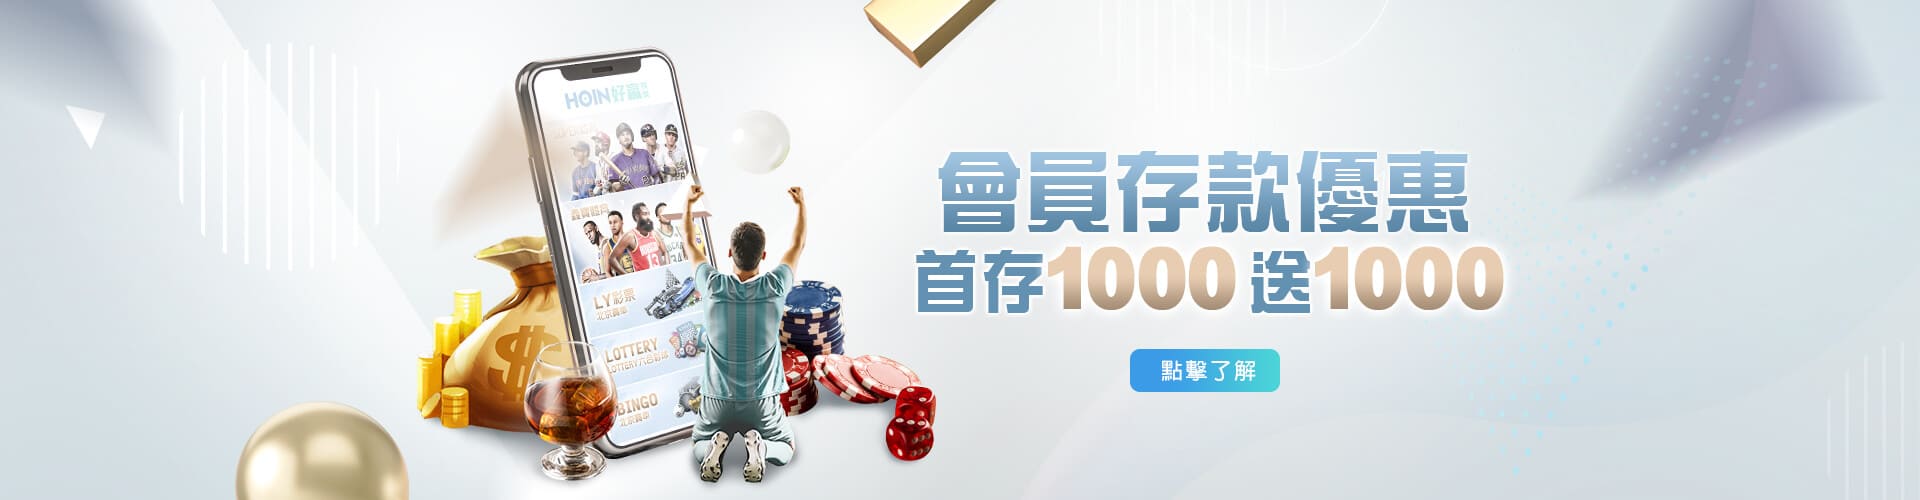 MG棋牌就是包你發棋牌-HOYA娛樂城出金存款1000送1000優惠